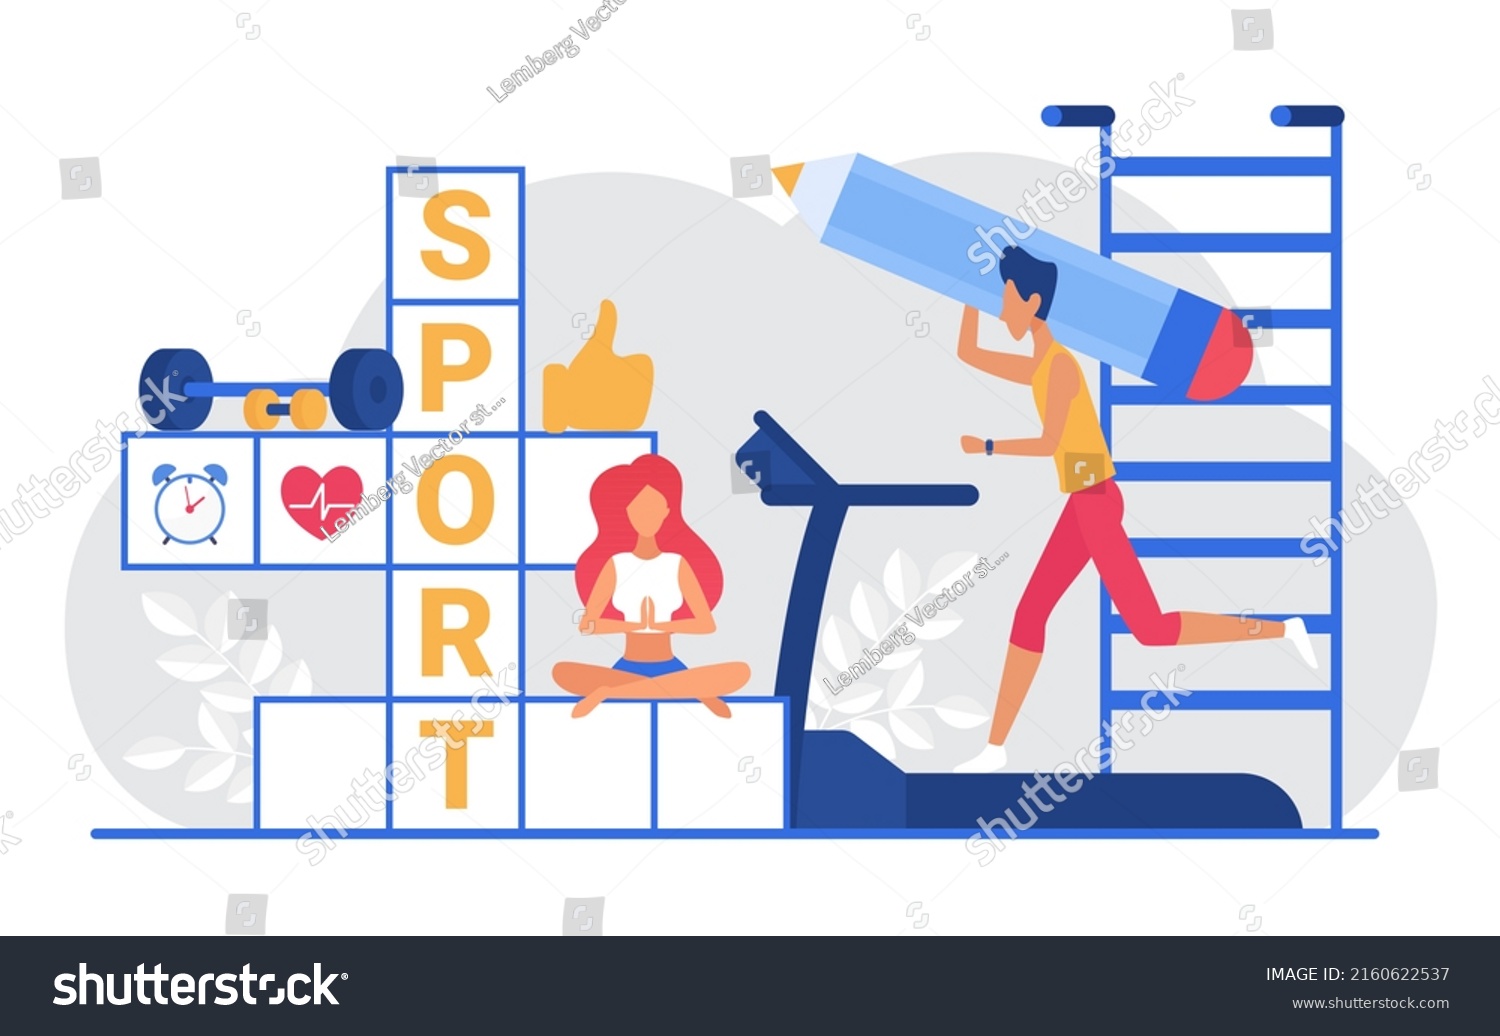 Sport Crossword Illustration Cartoon Sportive Man Stock Illustration